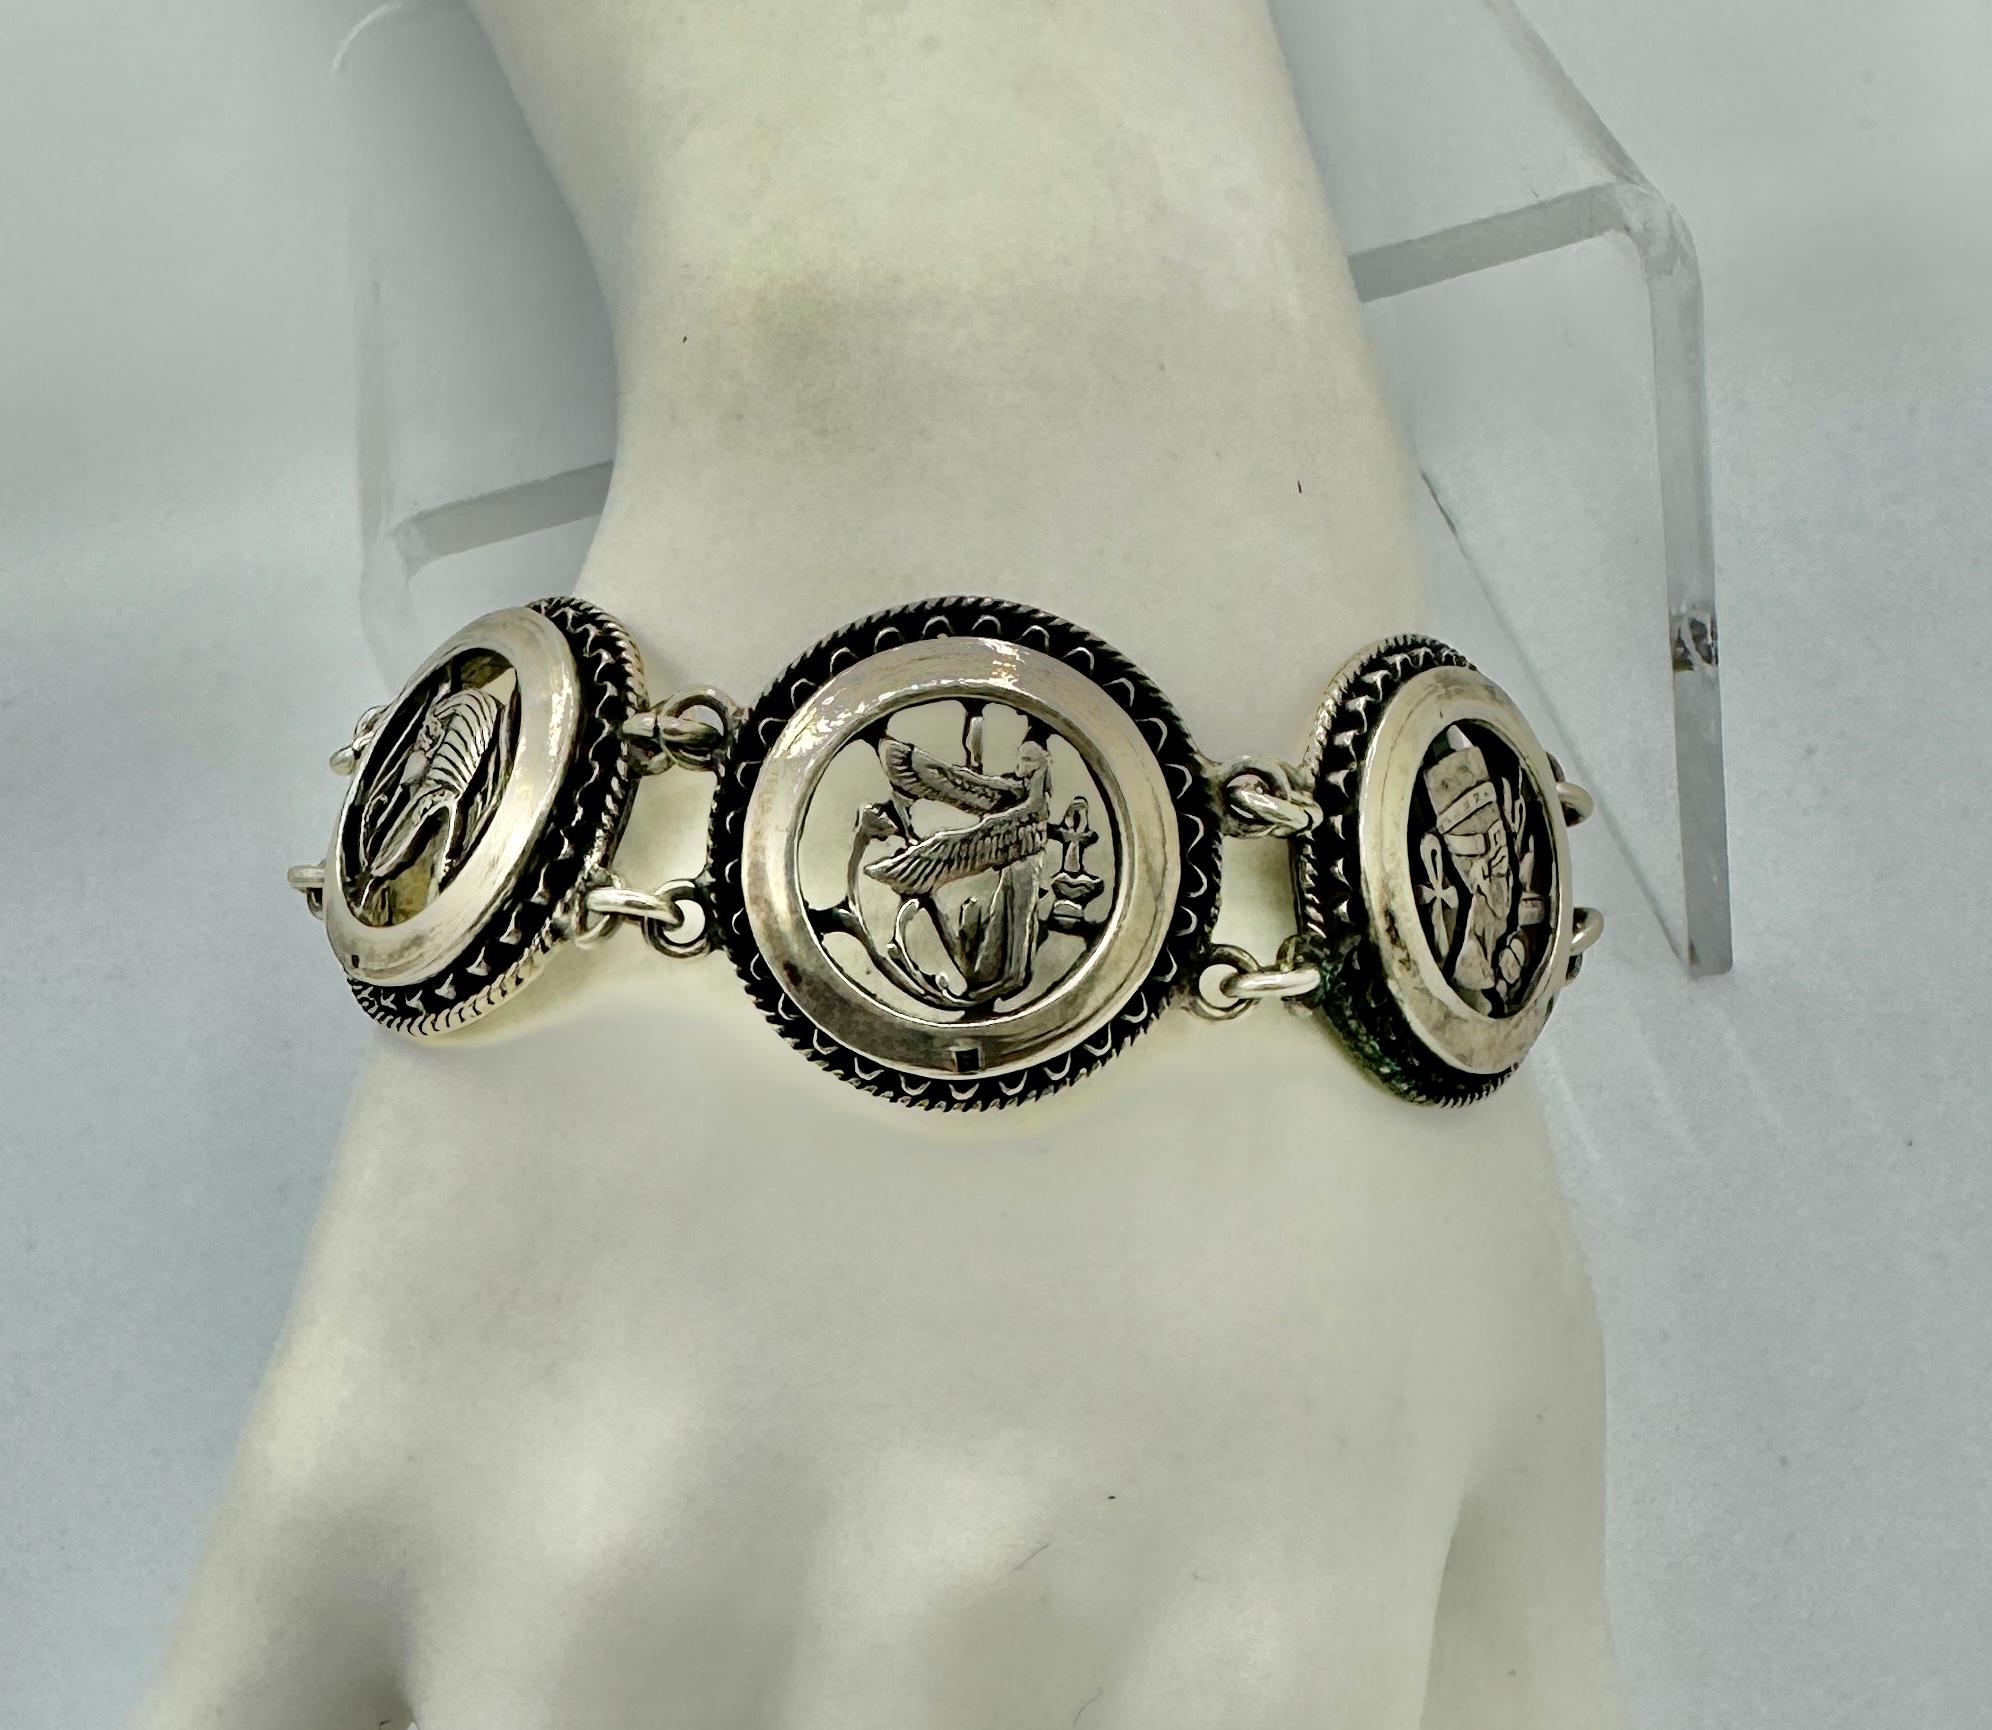 Dies ist eine wunderbare antike Art Deco Egyptian Revival Armband mit spektakulären Bildern aus dem alten Ägypten in Sterling Silber.  Die Bilder zeigen einen Streitwagen, König Tut, einen geflügelten Pharao, Nofretete und Lotusblumen. Das Armband